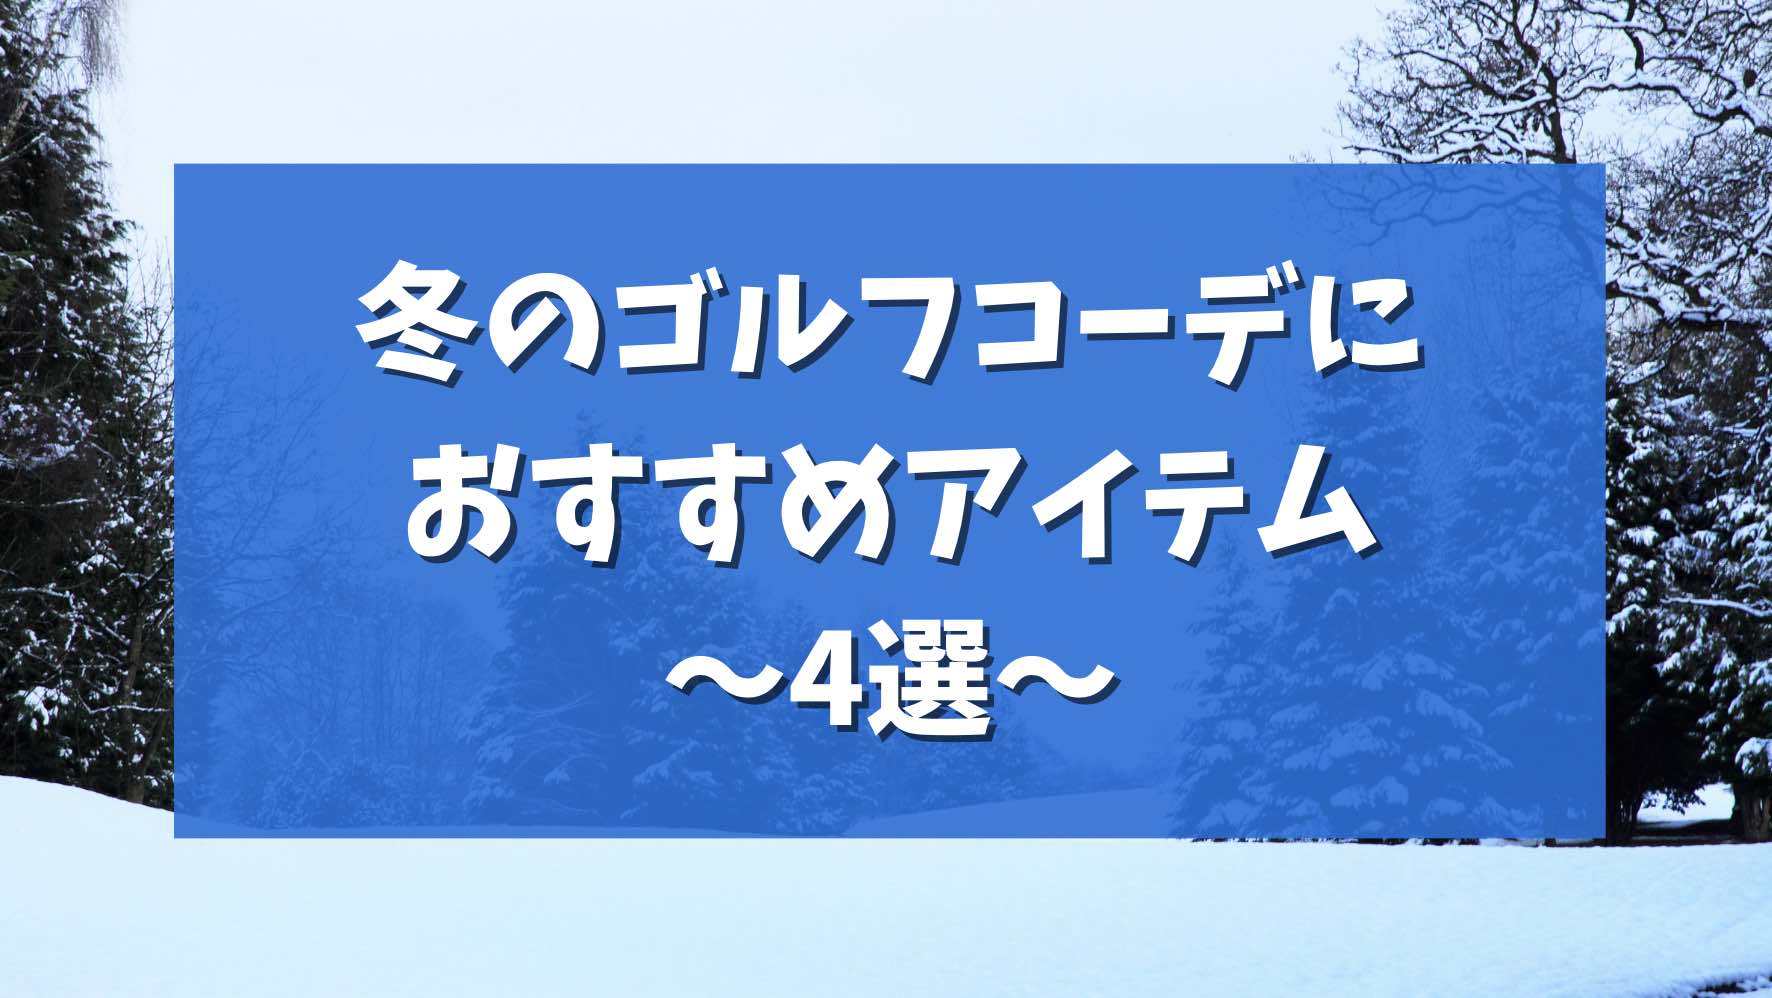 【レディース】冬のゴルフコーデにおすすめアイテム4選【防寒対策】